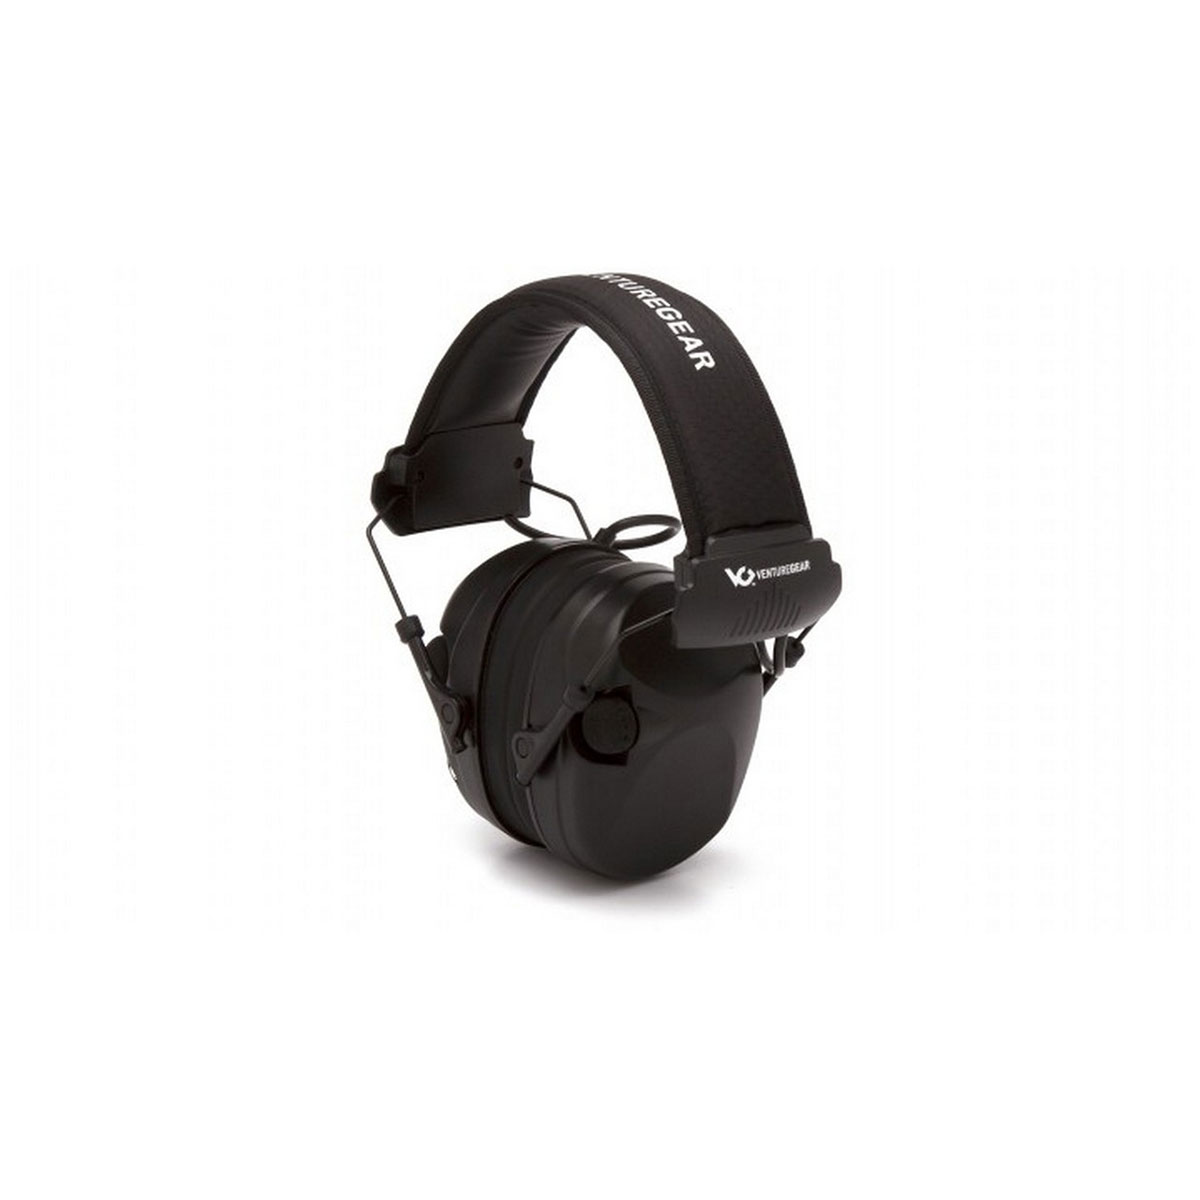 PYRAMEX SAFETY PRODUCTS - Sentinel Elec Ear Muff W/Aux Jack Black 26dB